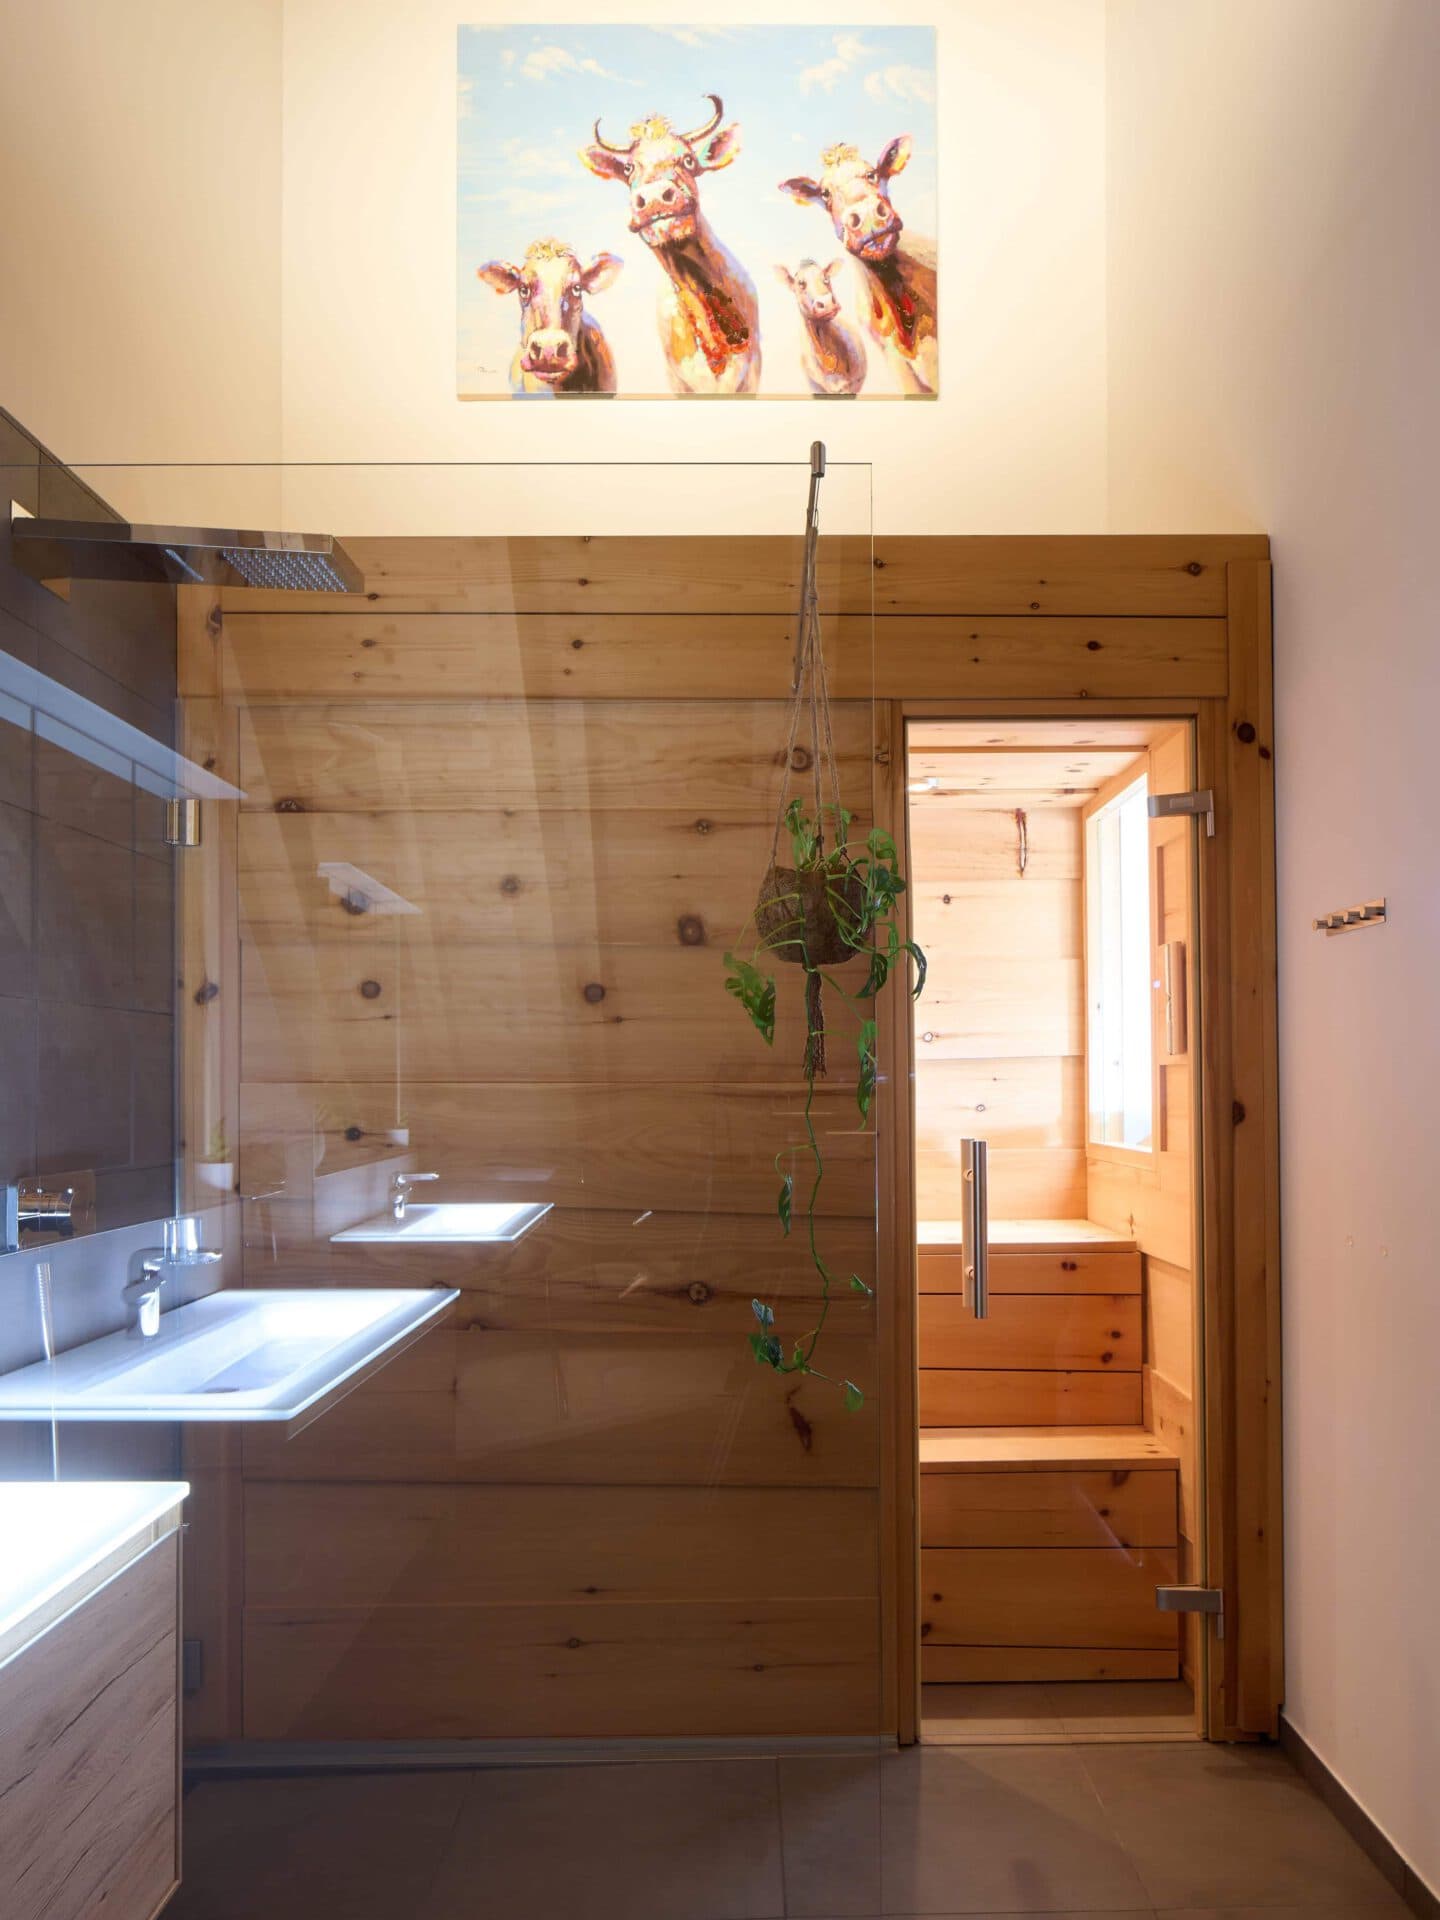 Aufnahme einer Sauna mit Dusche und Waschbecken in einem Doppelhaus